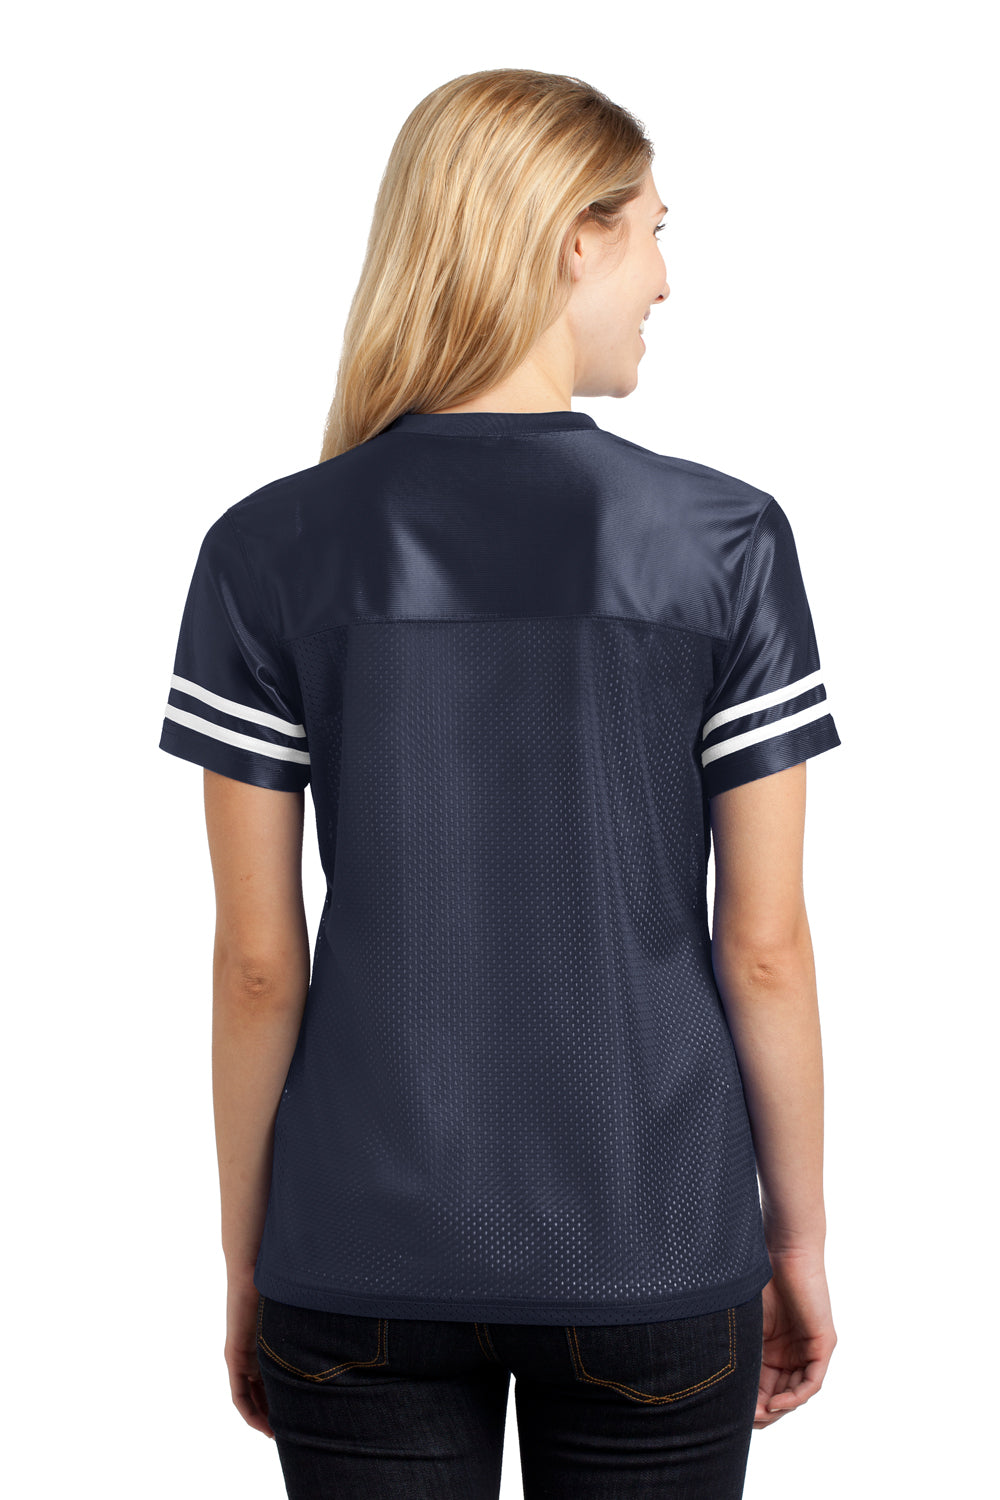 Sport-Tek LST307 Womens Short Sleeve V-Neck T-Shirt Navy Blue Back